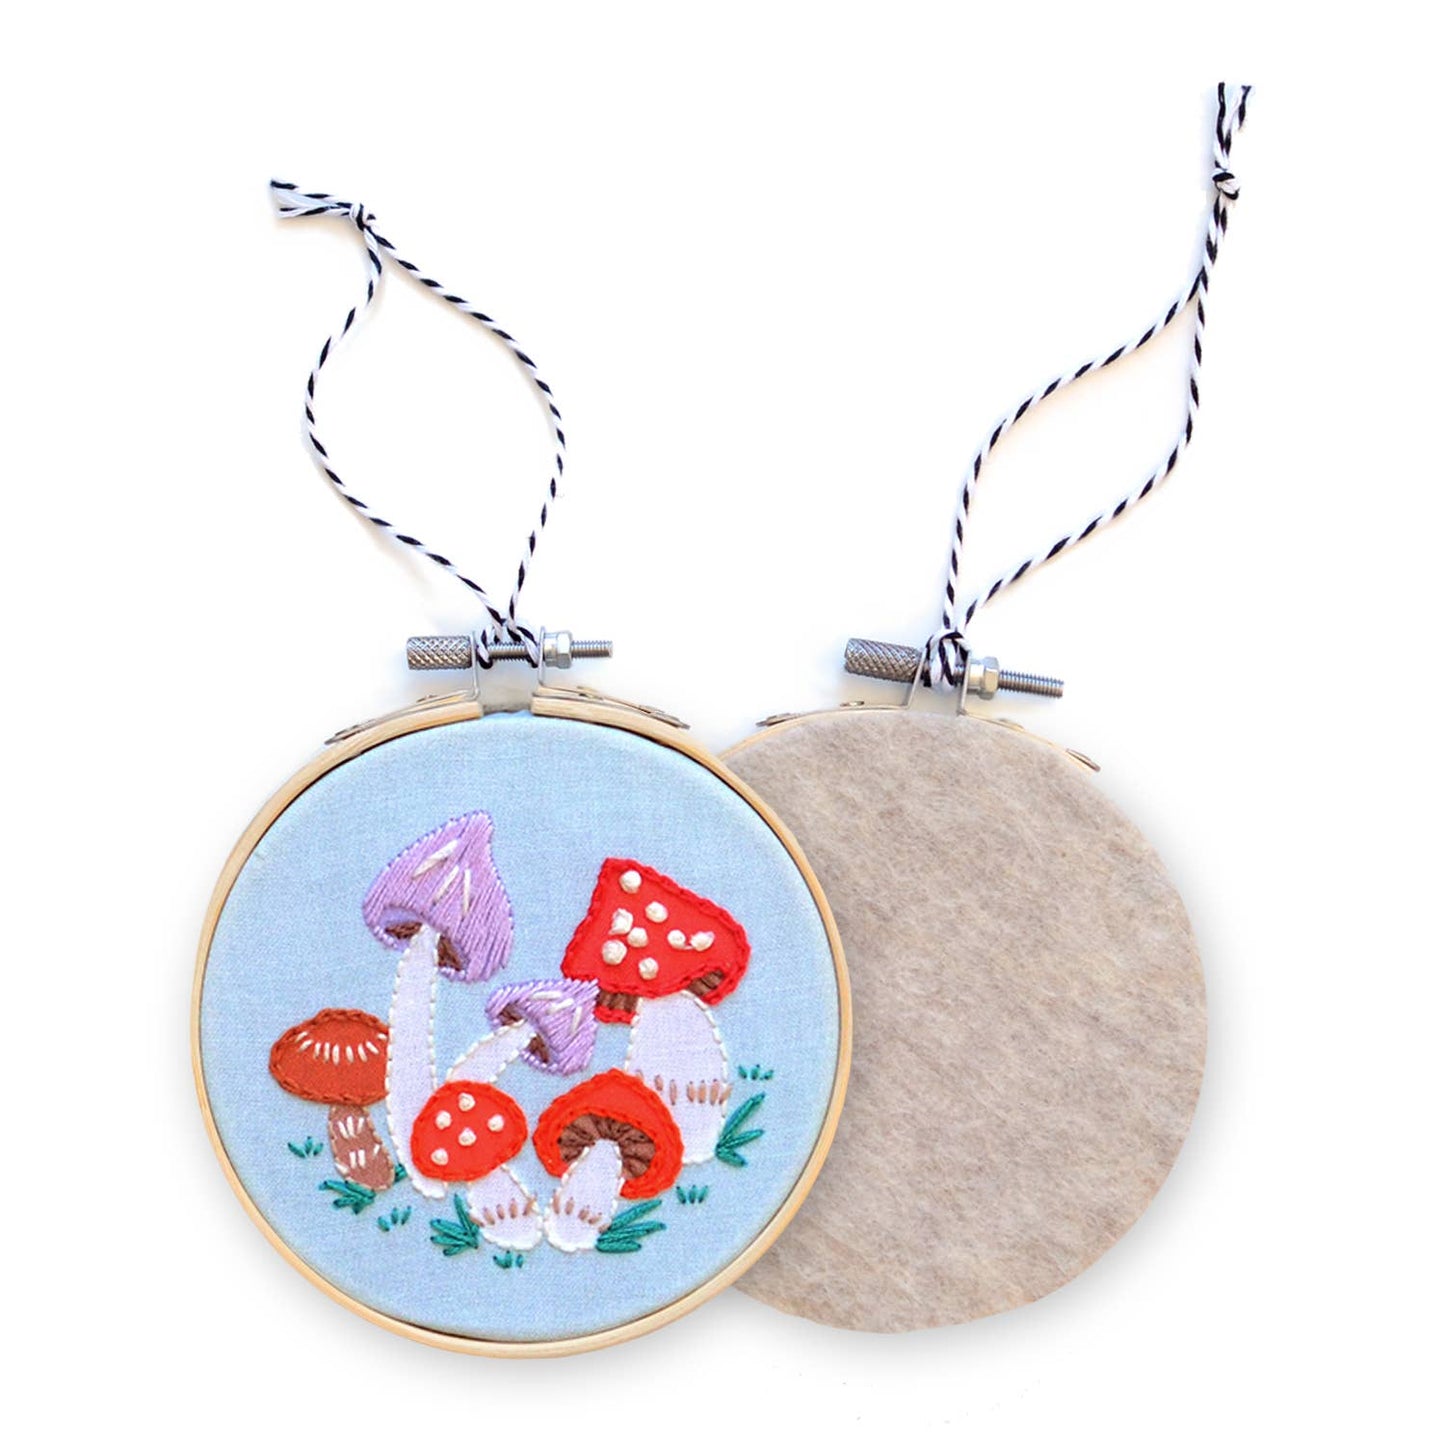 DIY Embroidered Ornament Kit, Mushrooms